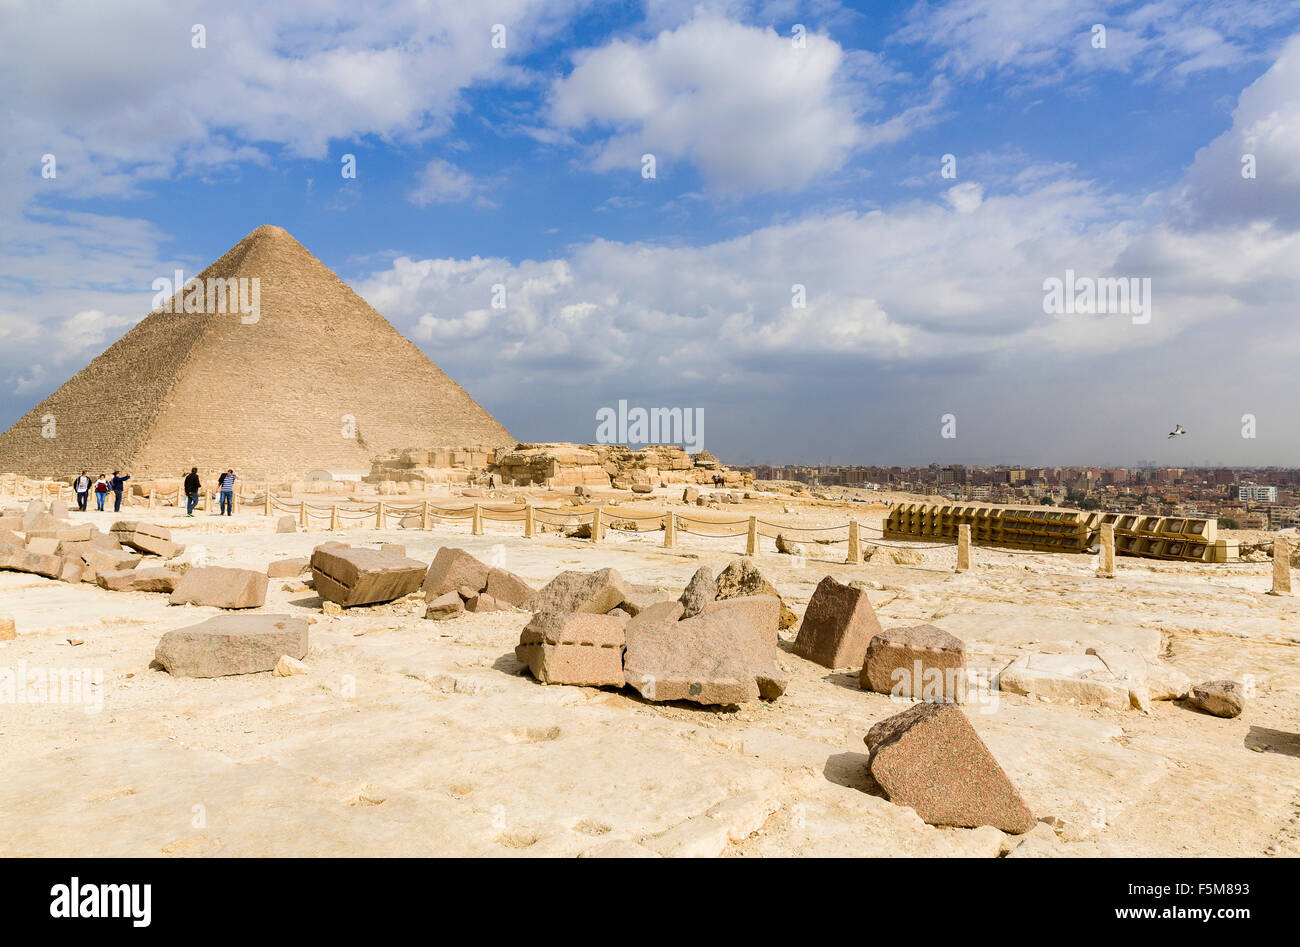 Ägypten, Kairo: Pyramiden von Gizeh (auch bekannt als die Pyramide von Khufu oder der Pyramide des Cheops) Stockfoto